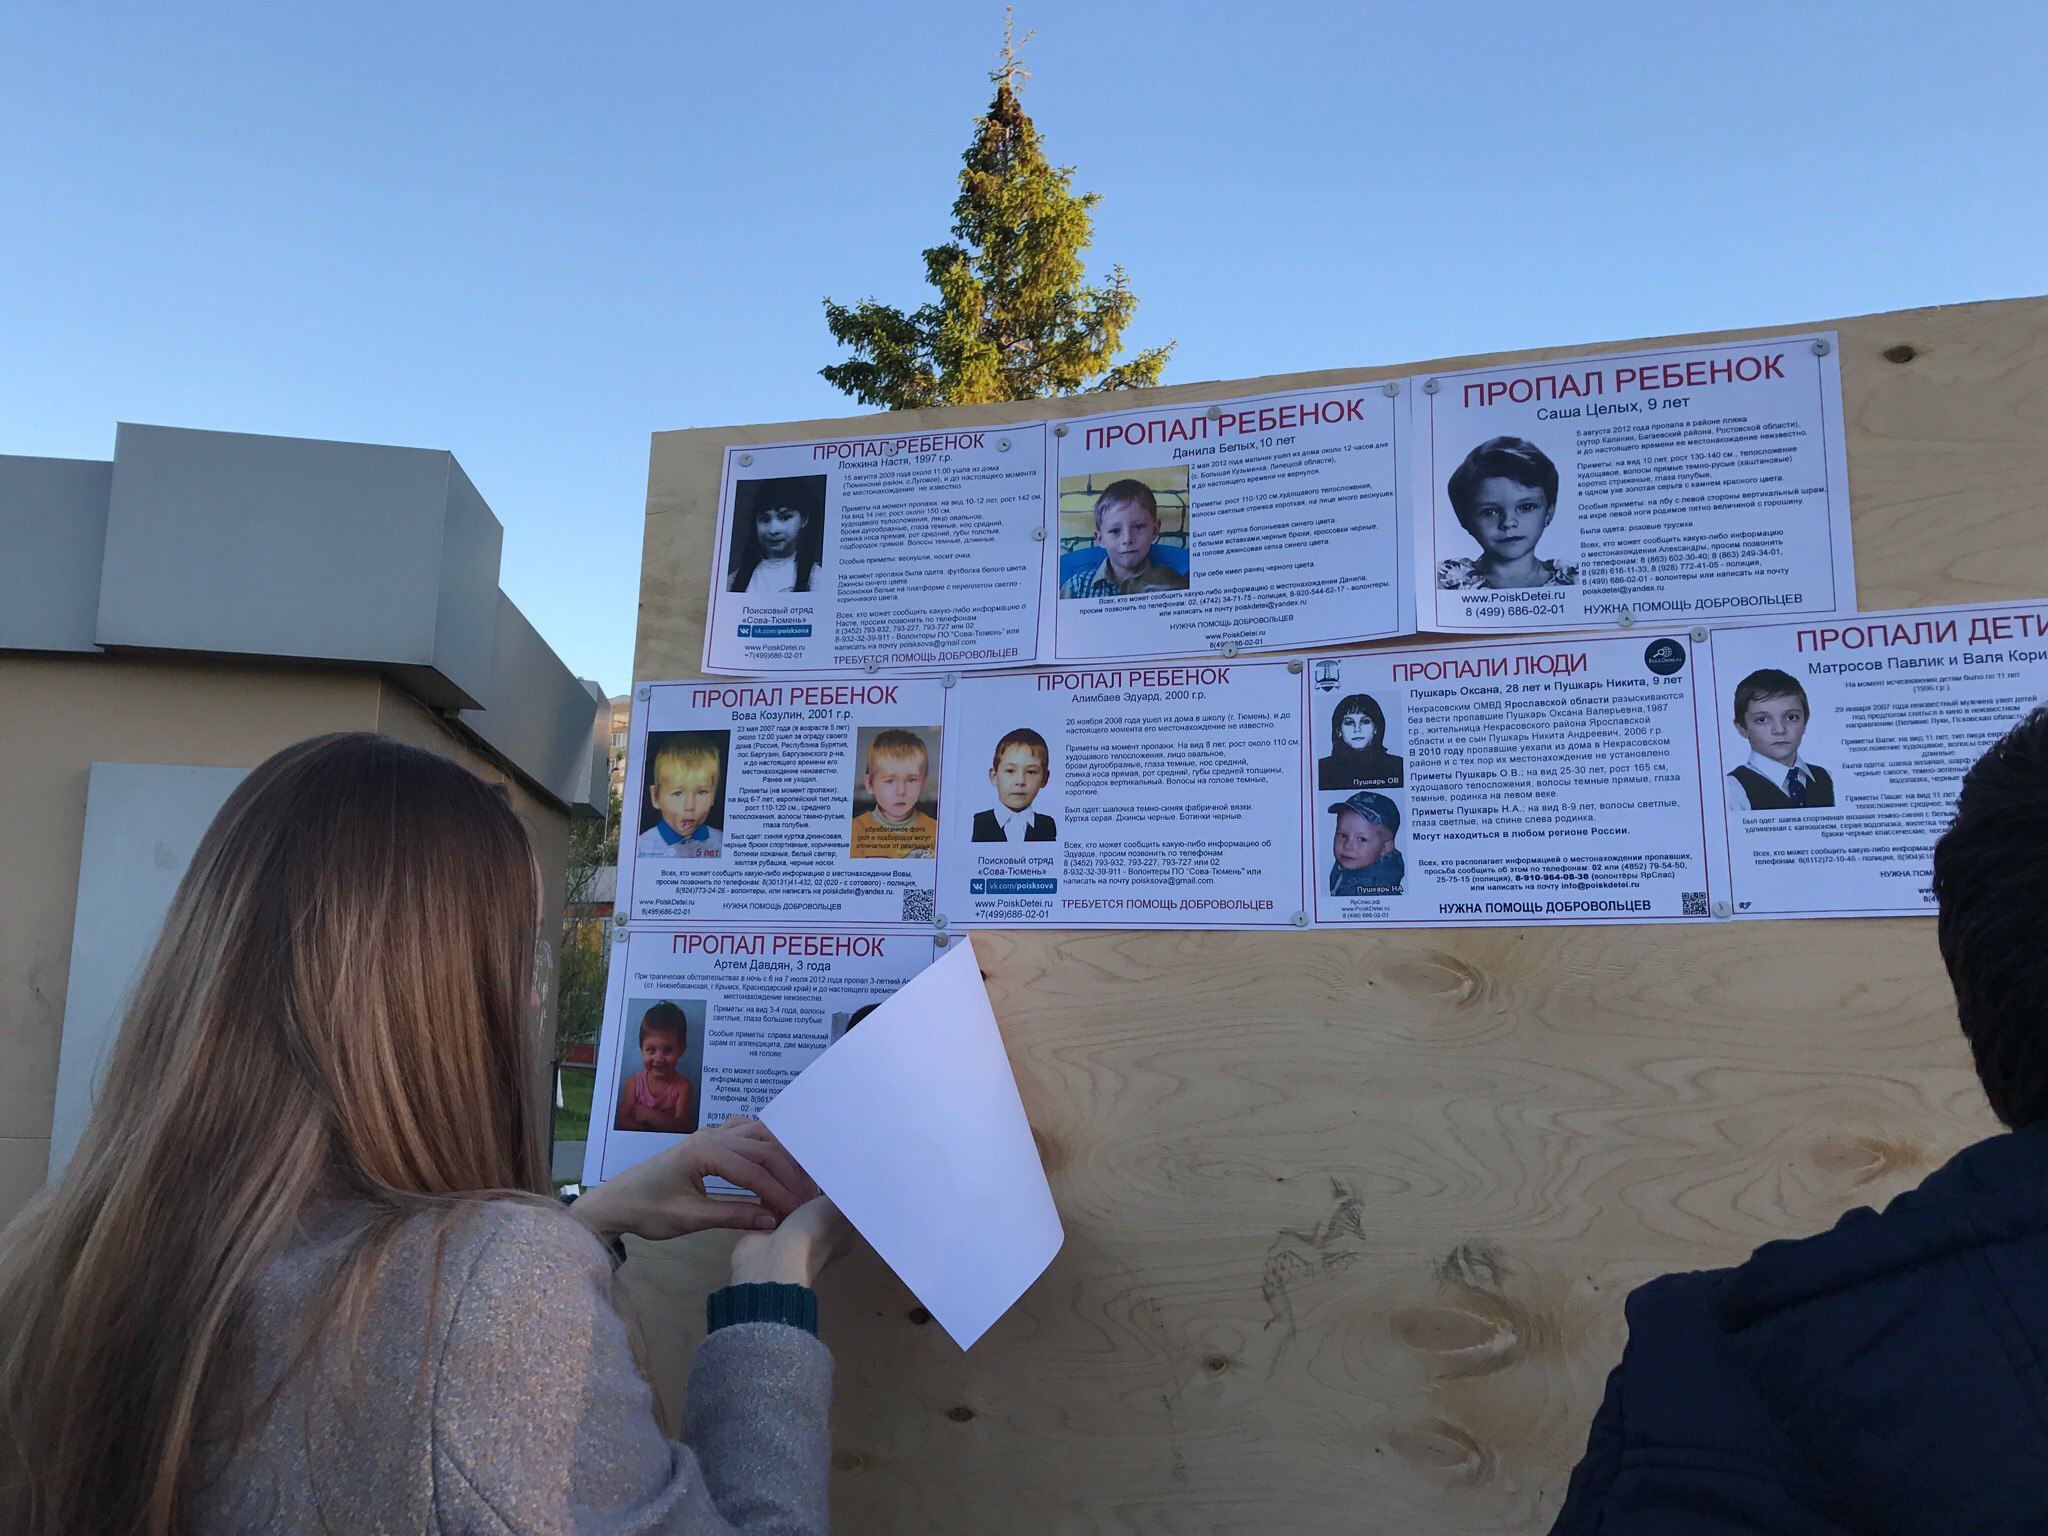 В Международный день пропавших детей тюменские волонтеры встречаются в центре города, расклеивают ориентировки и разговаривают с местными жителями, рассказывая о тех, кто до сих пор не вернулся домой